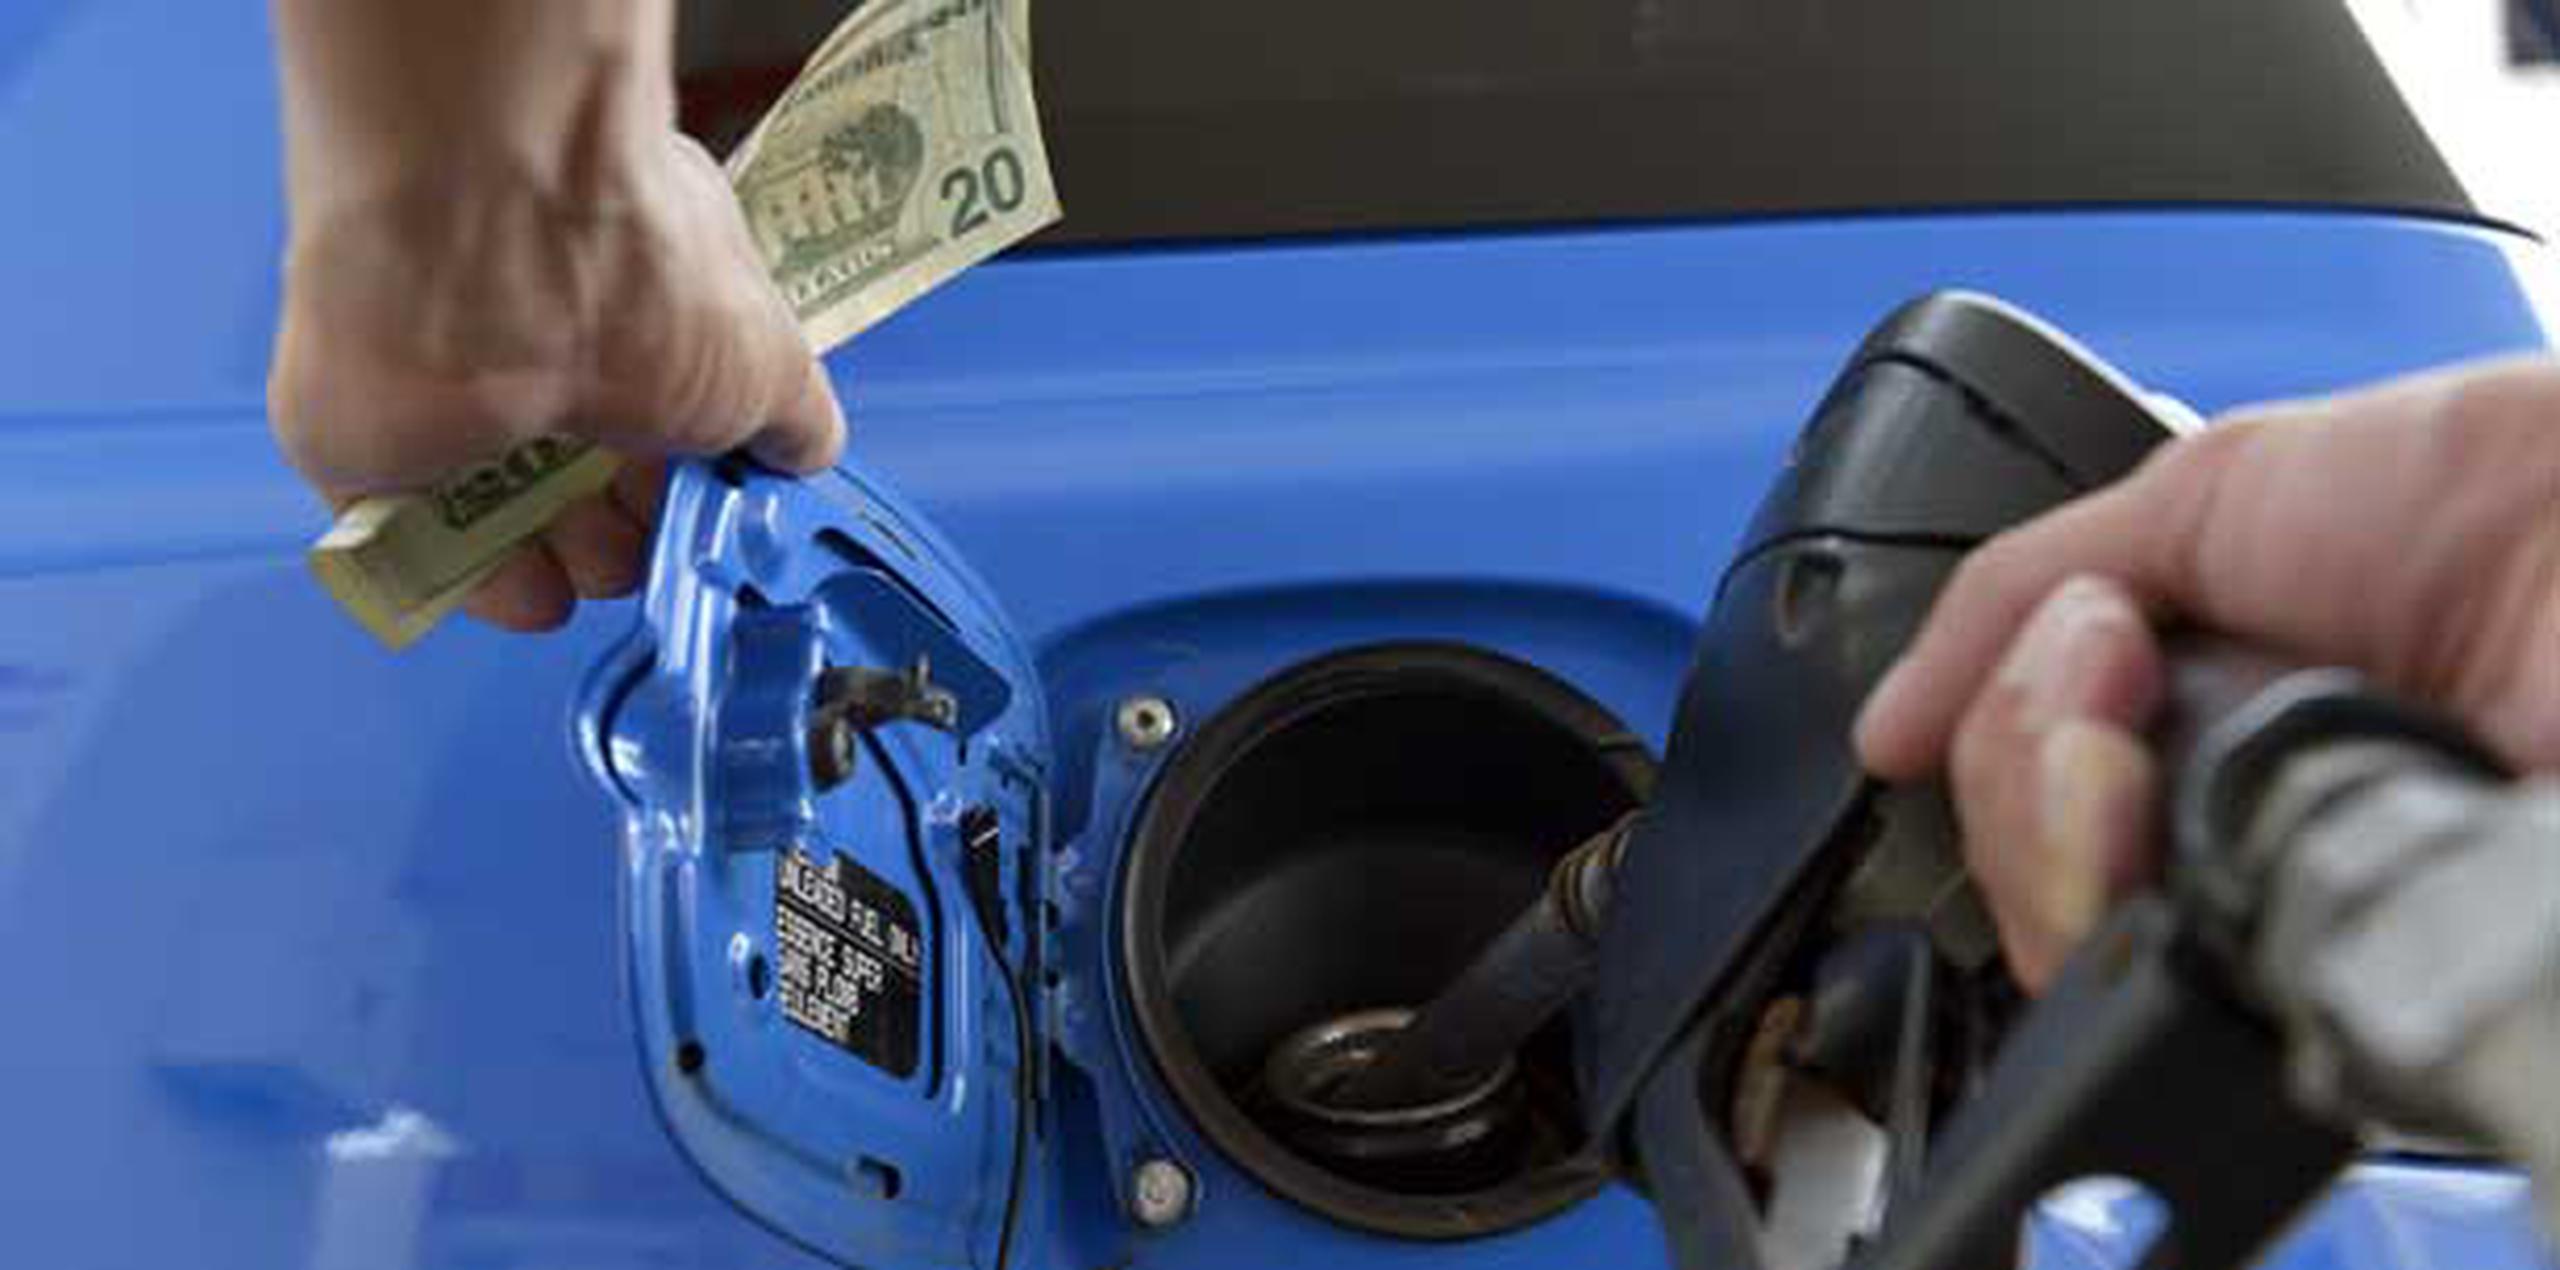 Según DACO, en algunas estaciones de gasolina se cobraba 90 centavos el litro del combustible a quienes pagaran en efectivo y para quienes usaran sus tarjetas de crédito o débito, el precio era de 98 centavos el litro, excediendo su margen de ganancias. (Archivo)